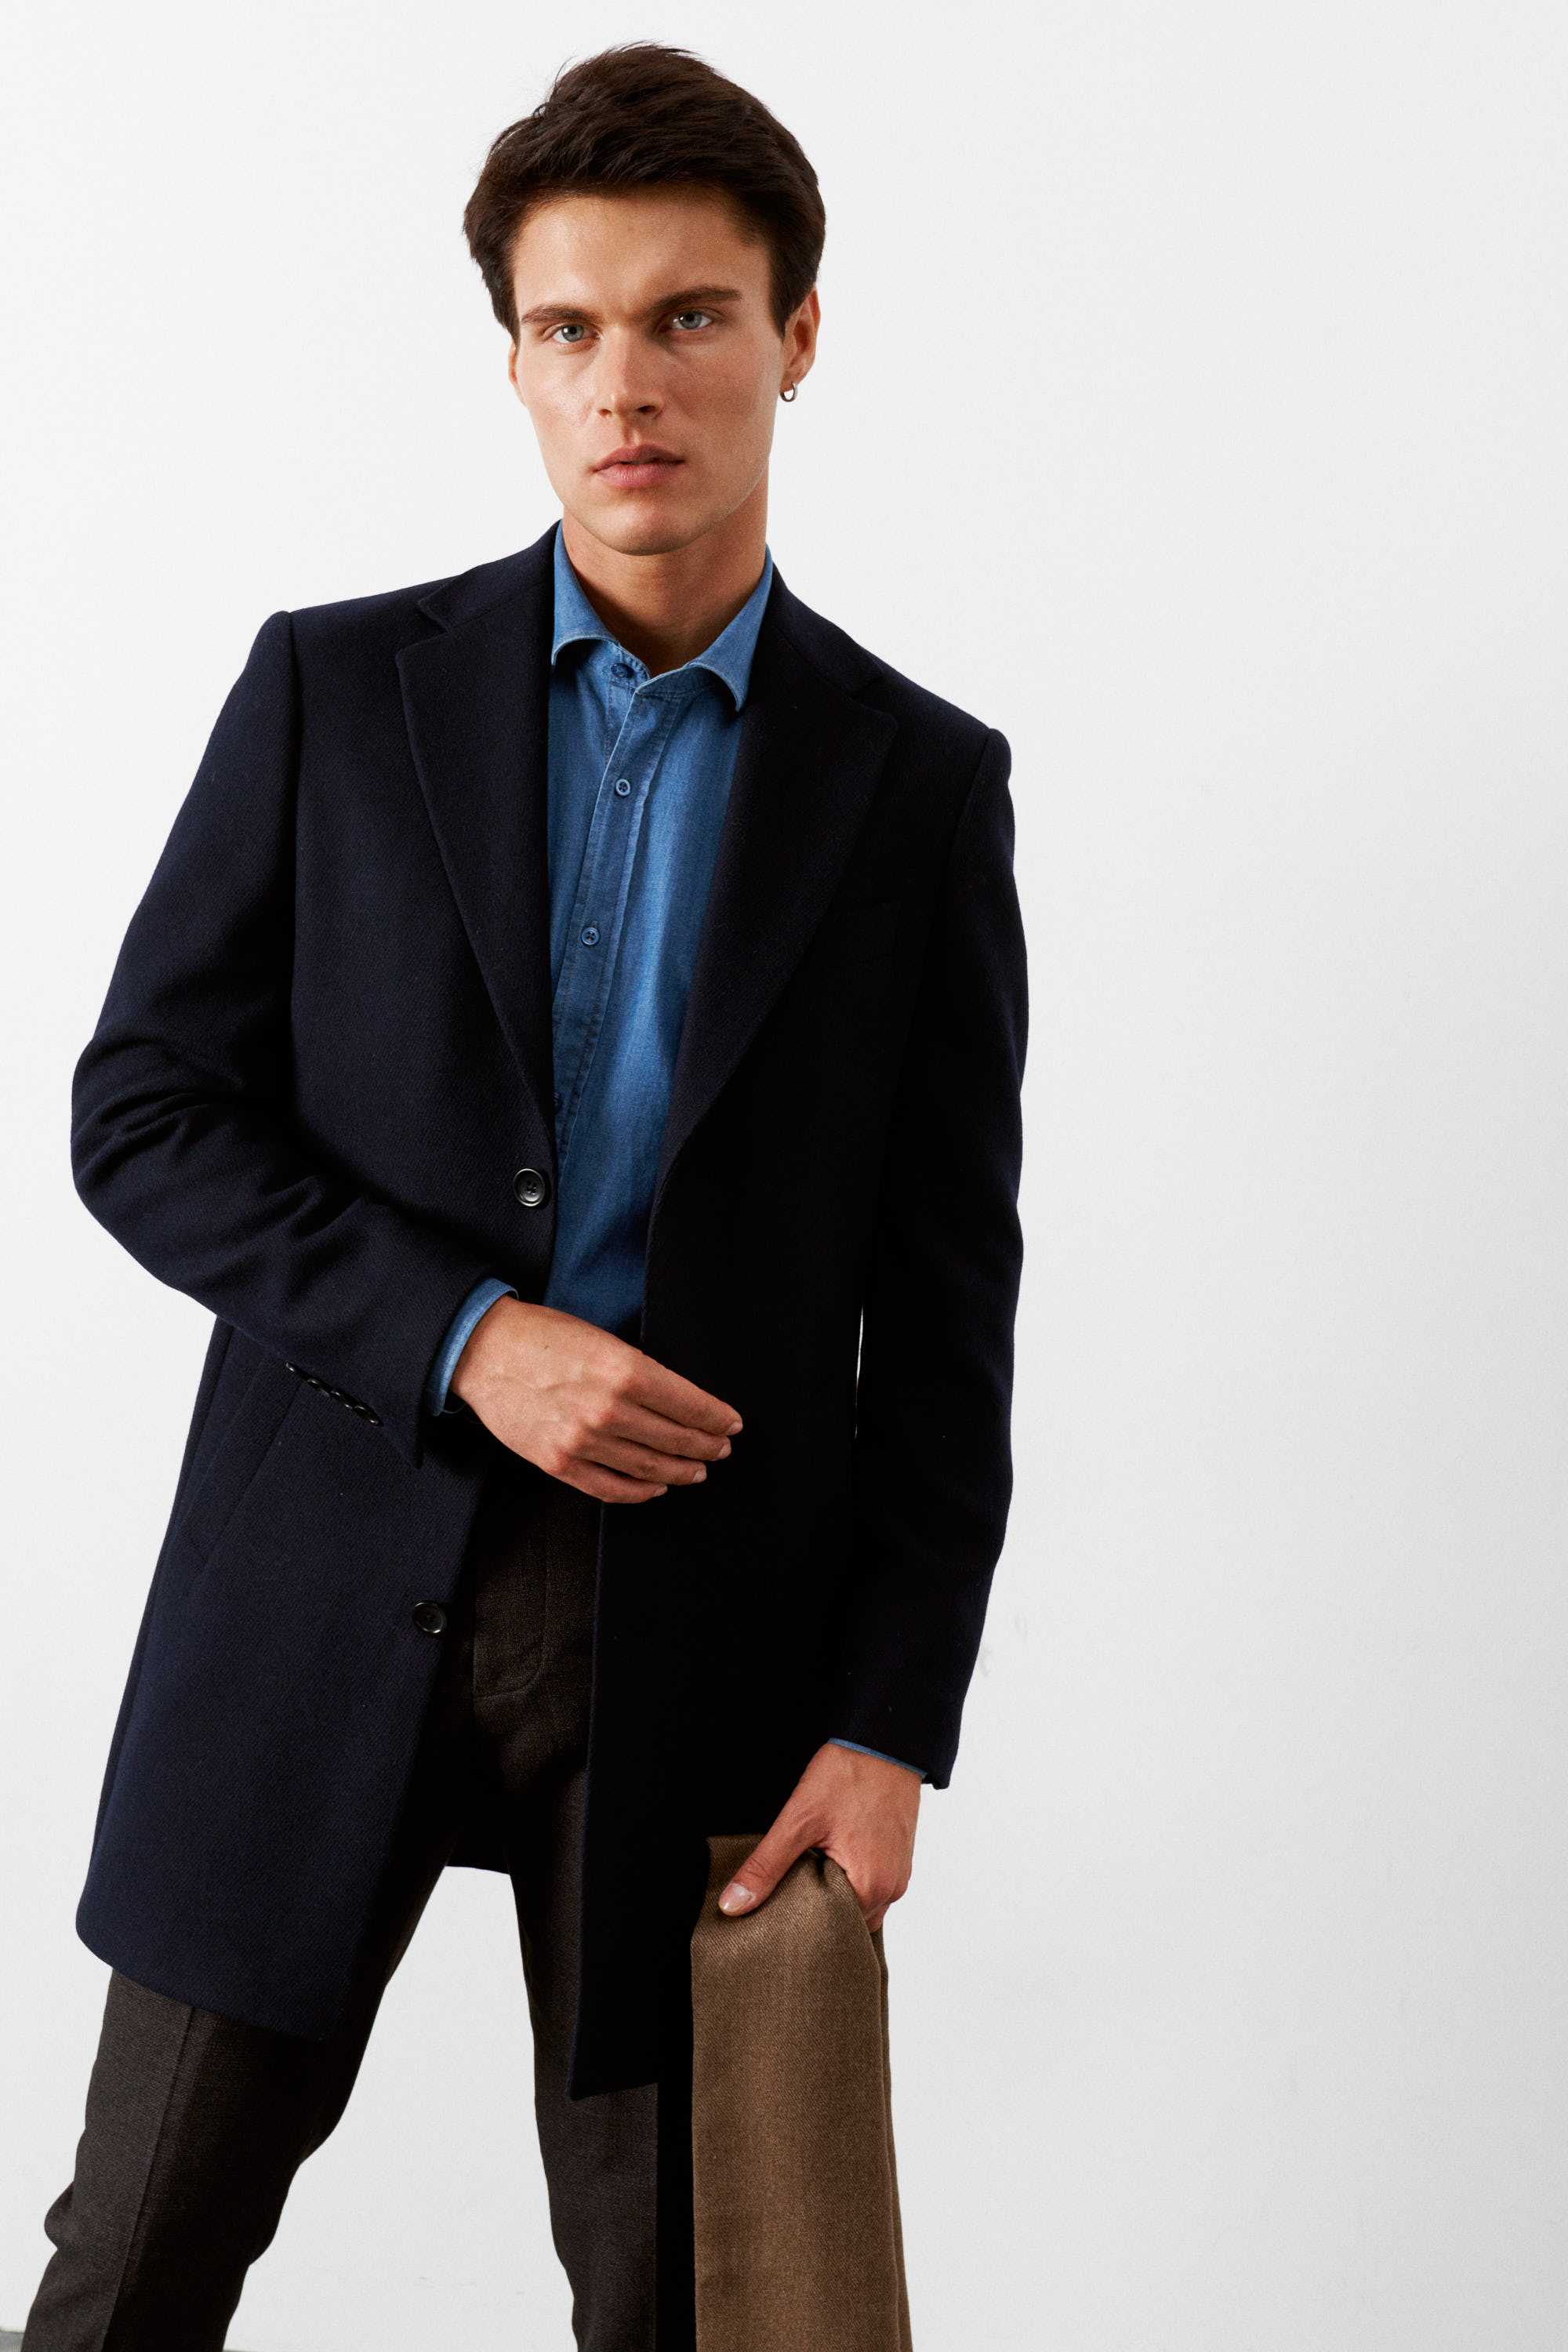 Пальто мужское демисезонное, темно-синее, диагональная фактура